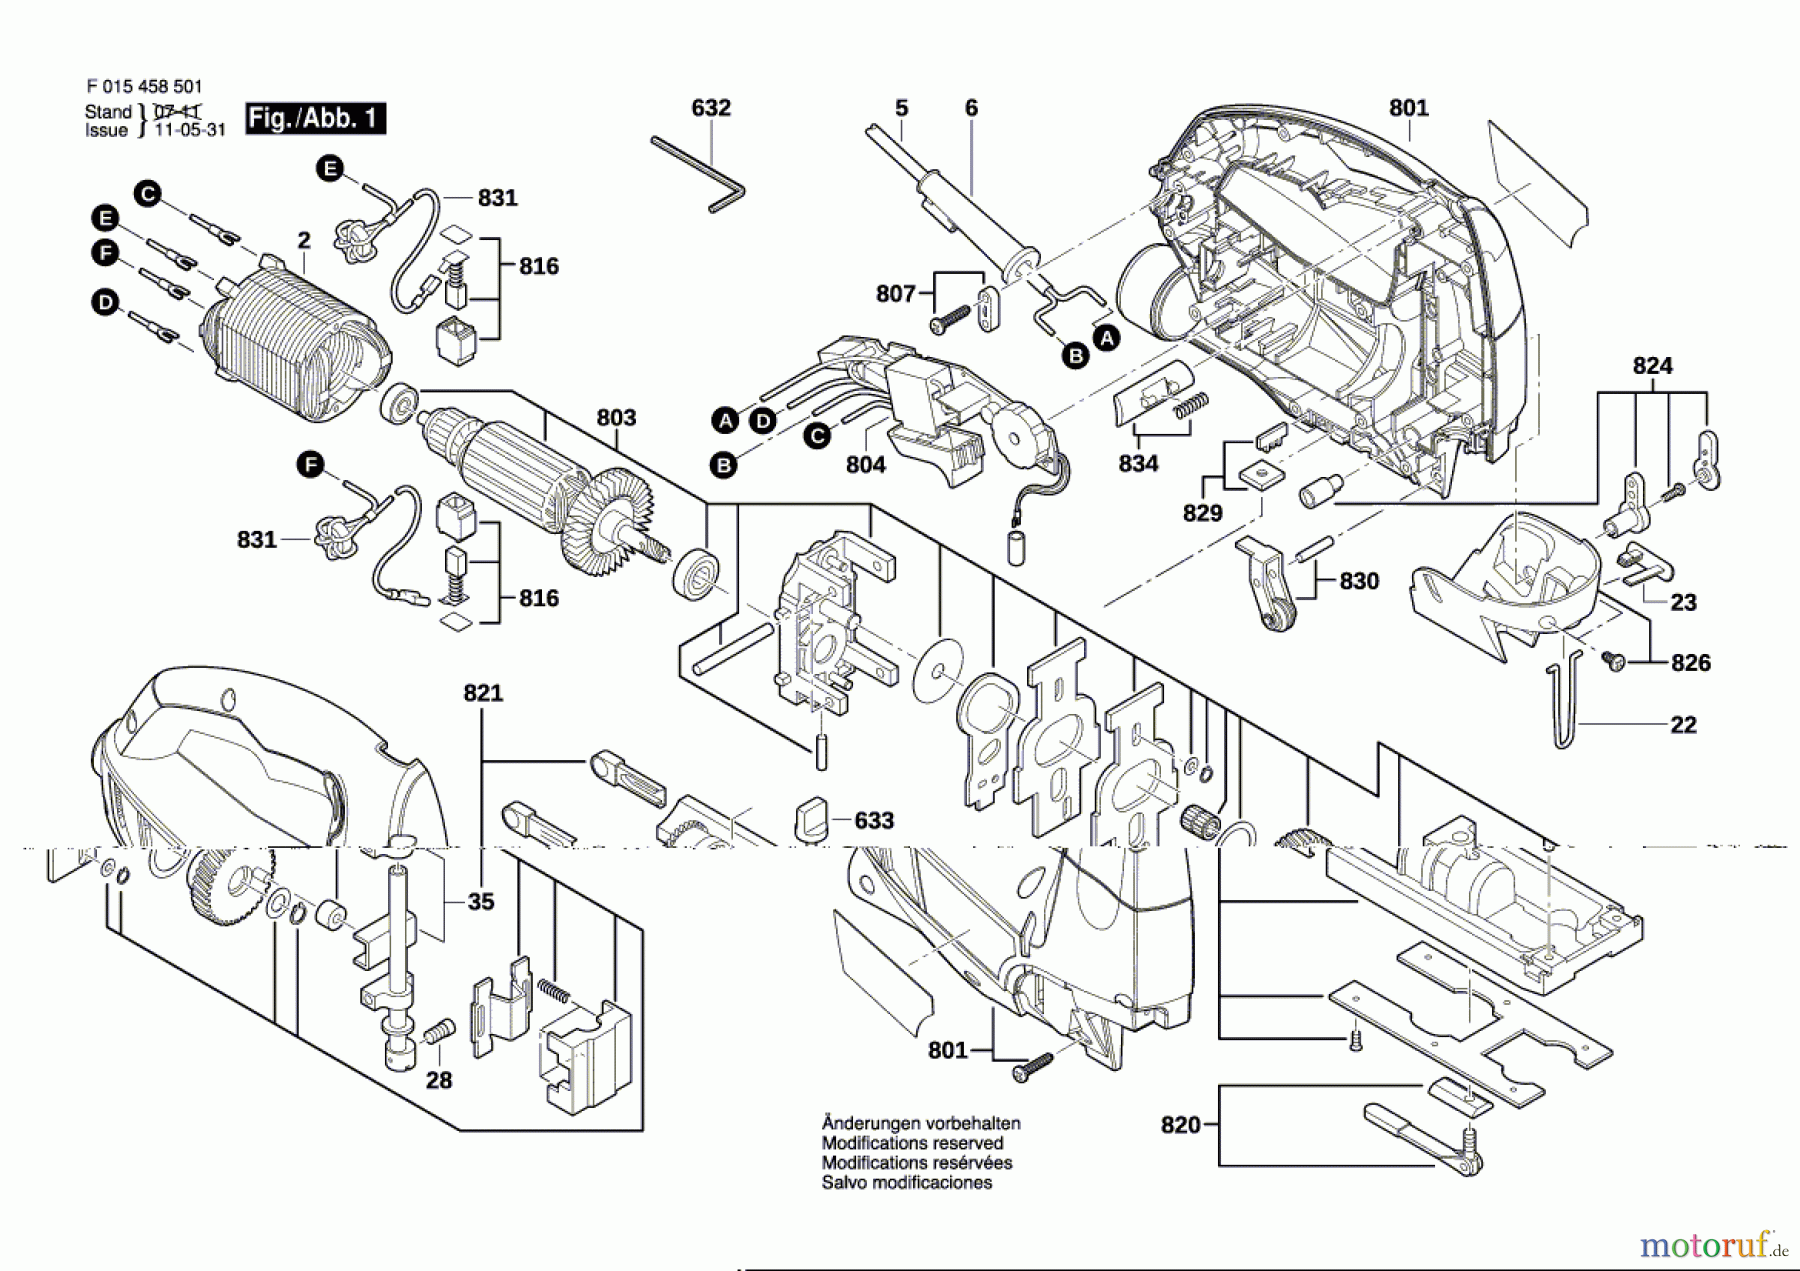  Bosch Werkzeug Laubsäge 4585 Seite 1